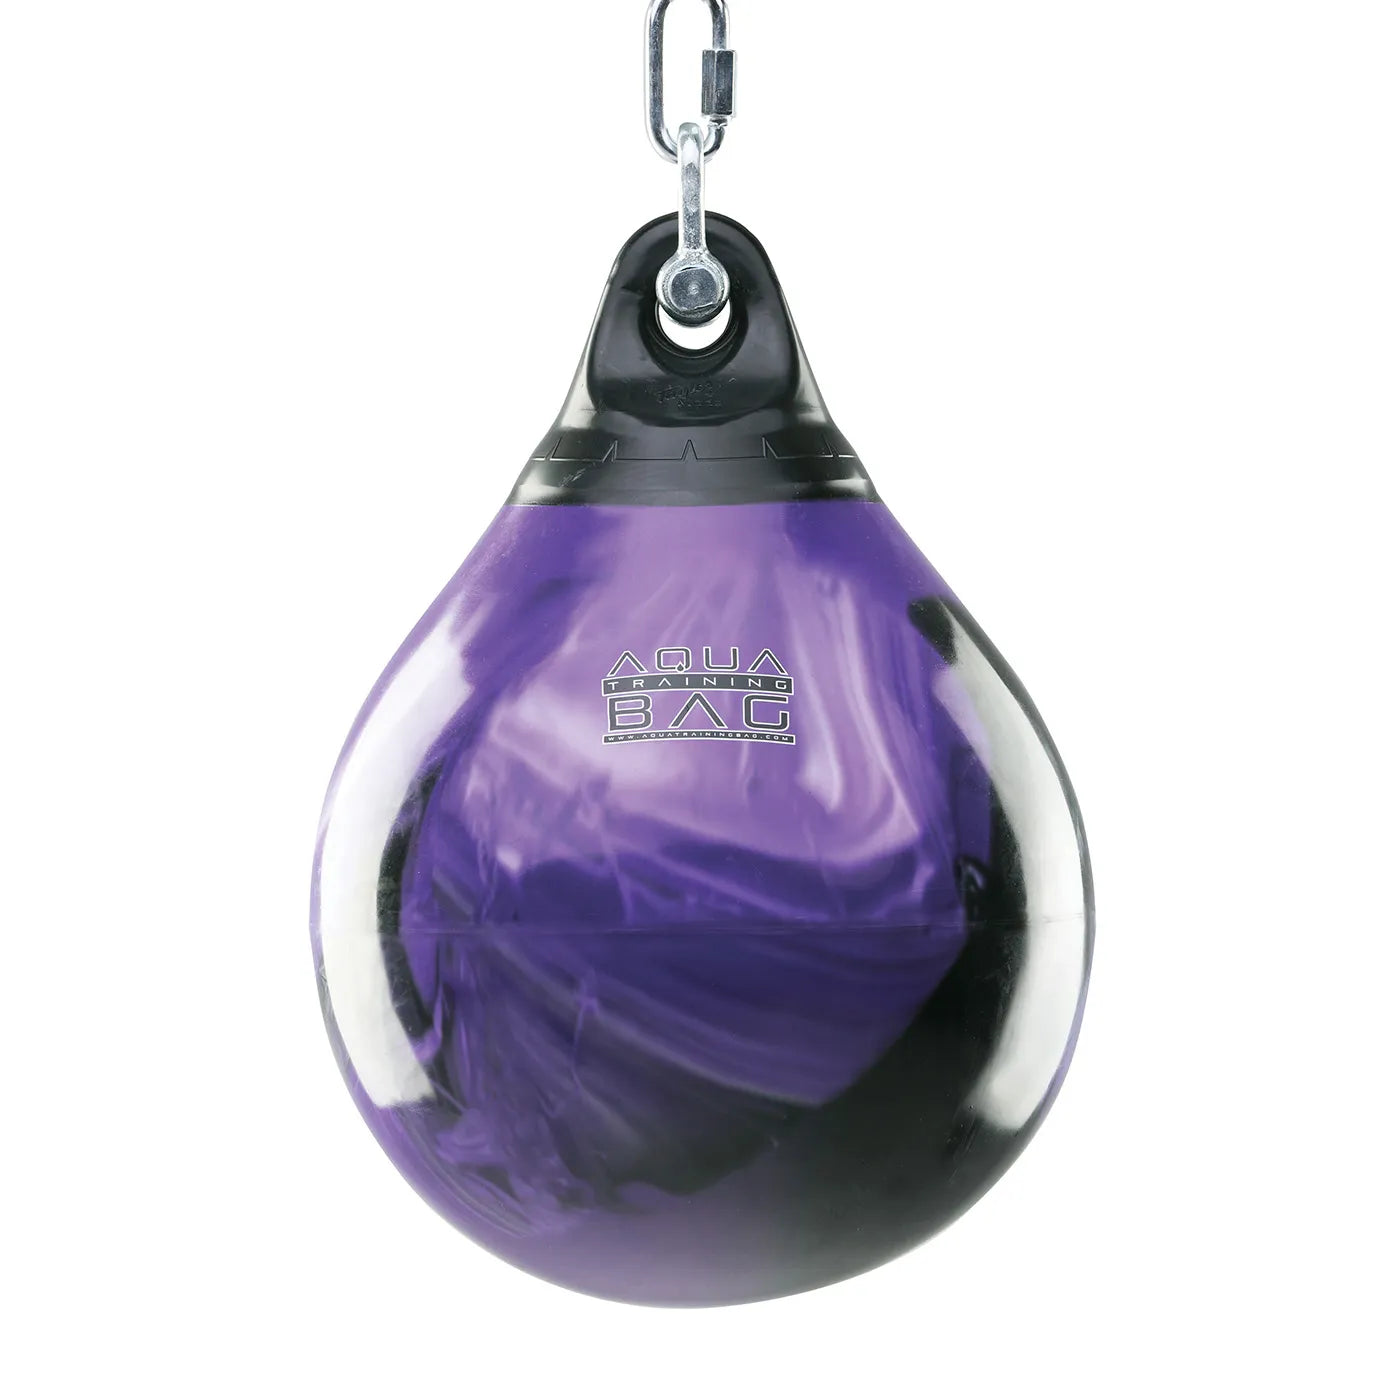 15" 75 lb. Aqua Punching Bag - Purple Crush - Gymless